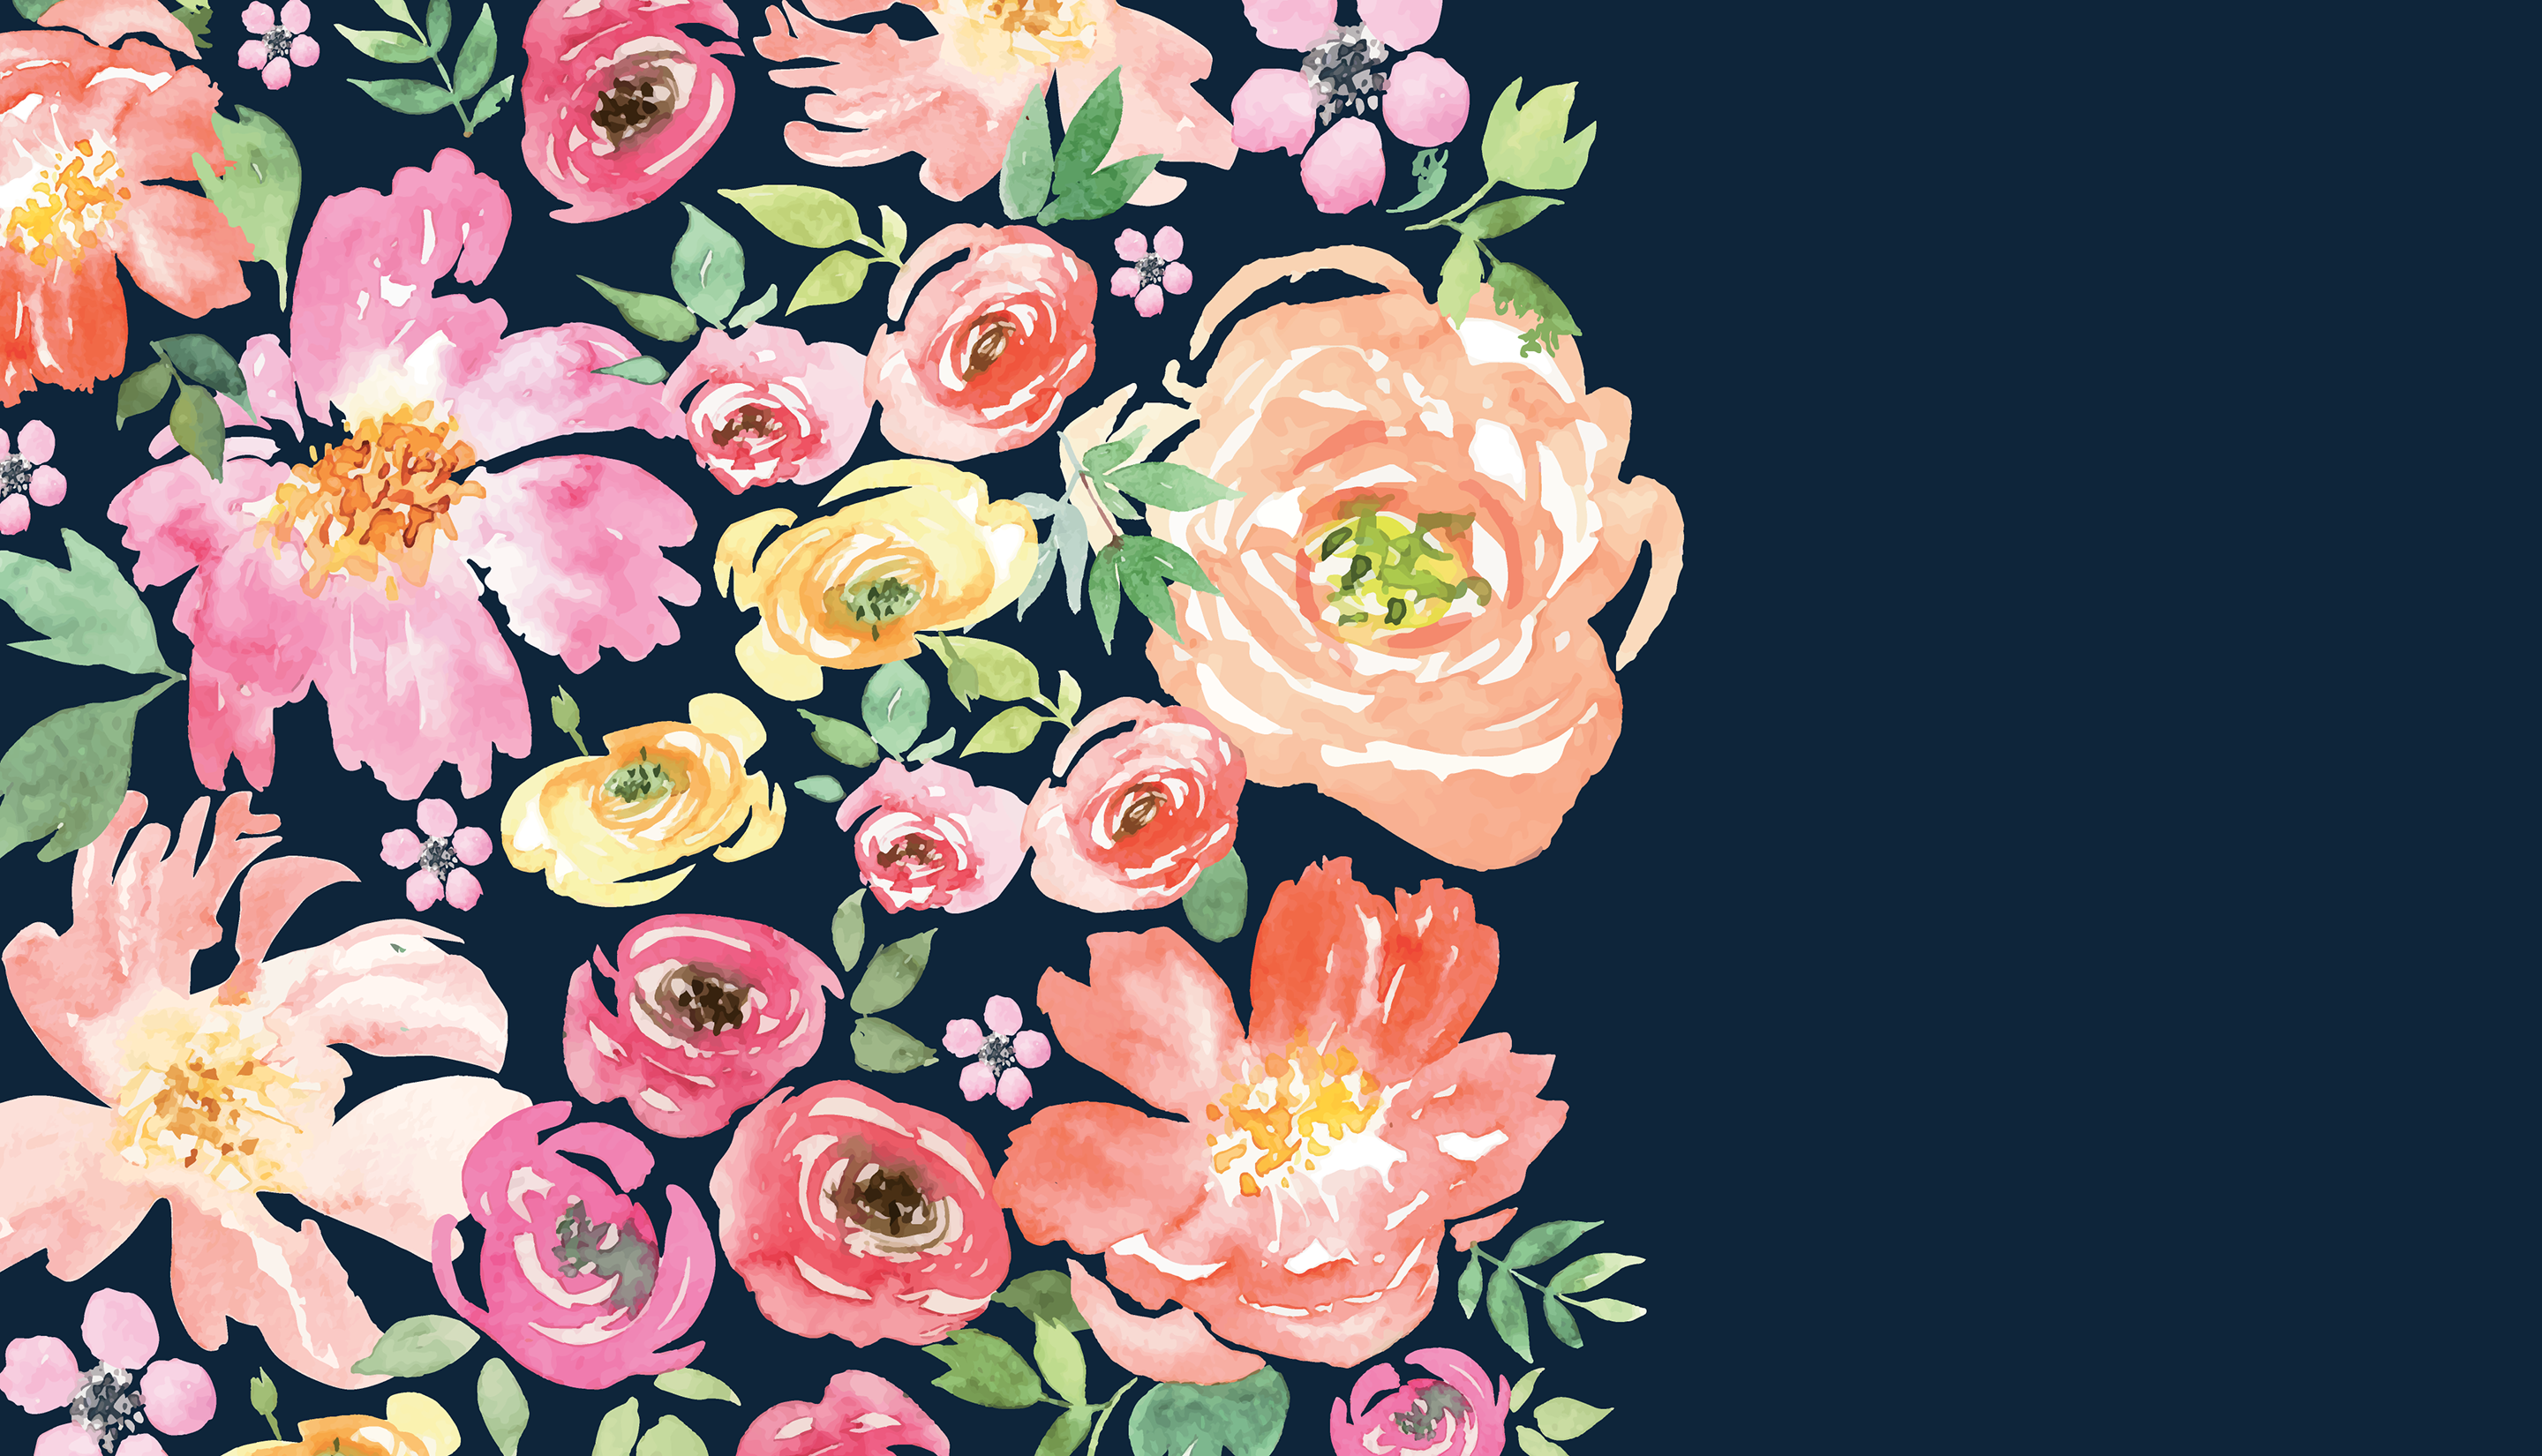 floral desktop wallpaper,flower,pink,garden roses,rose,floral design